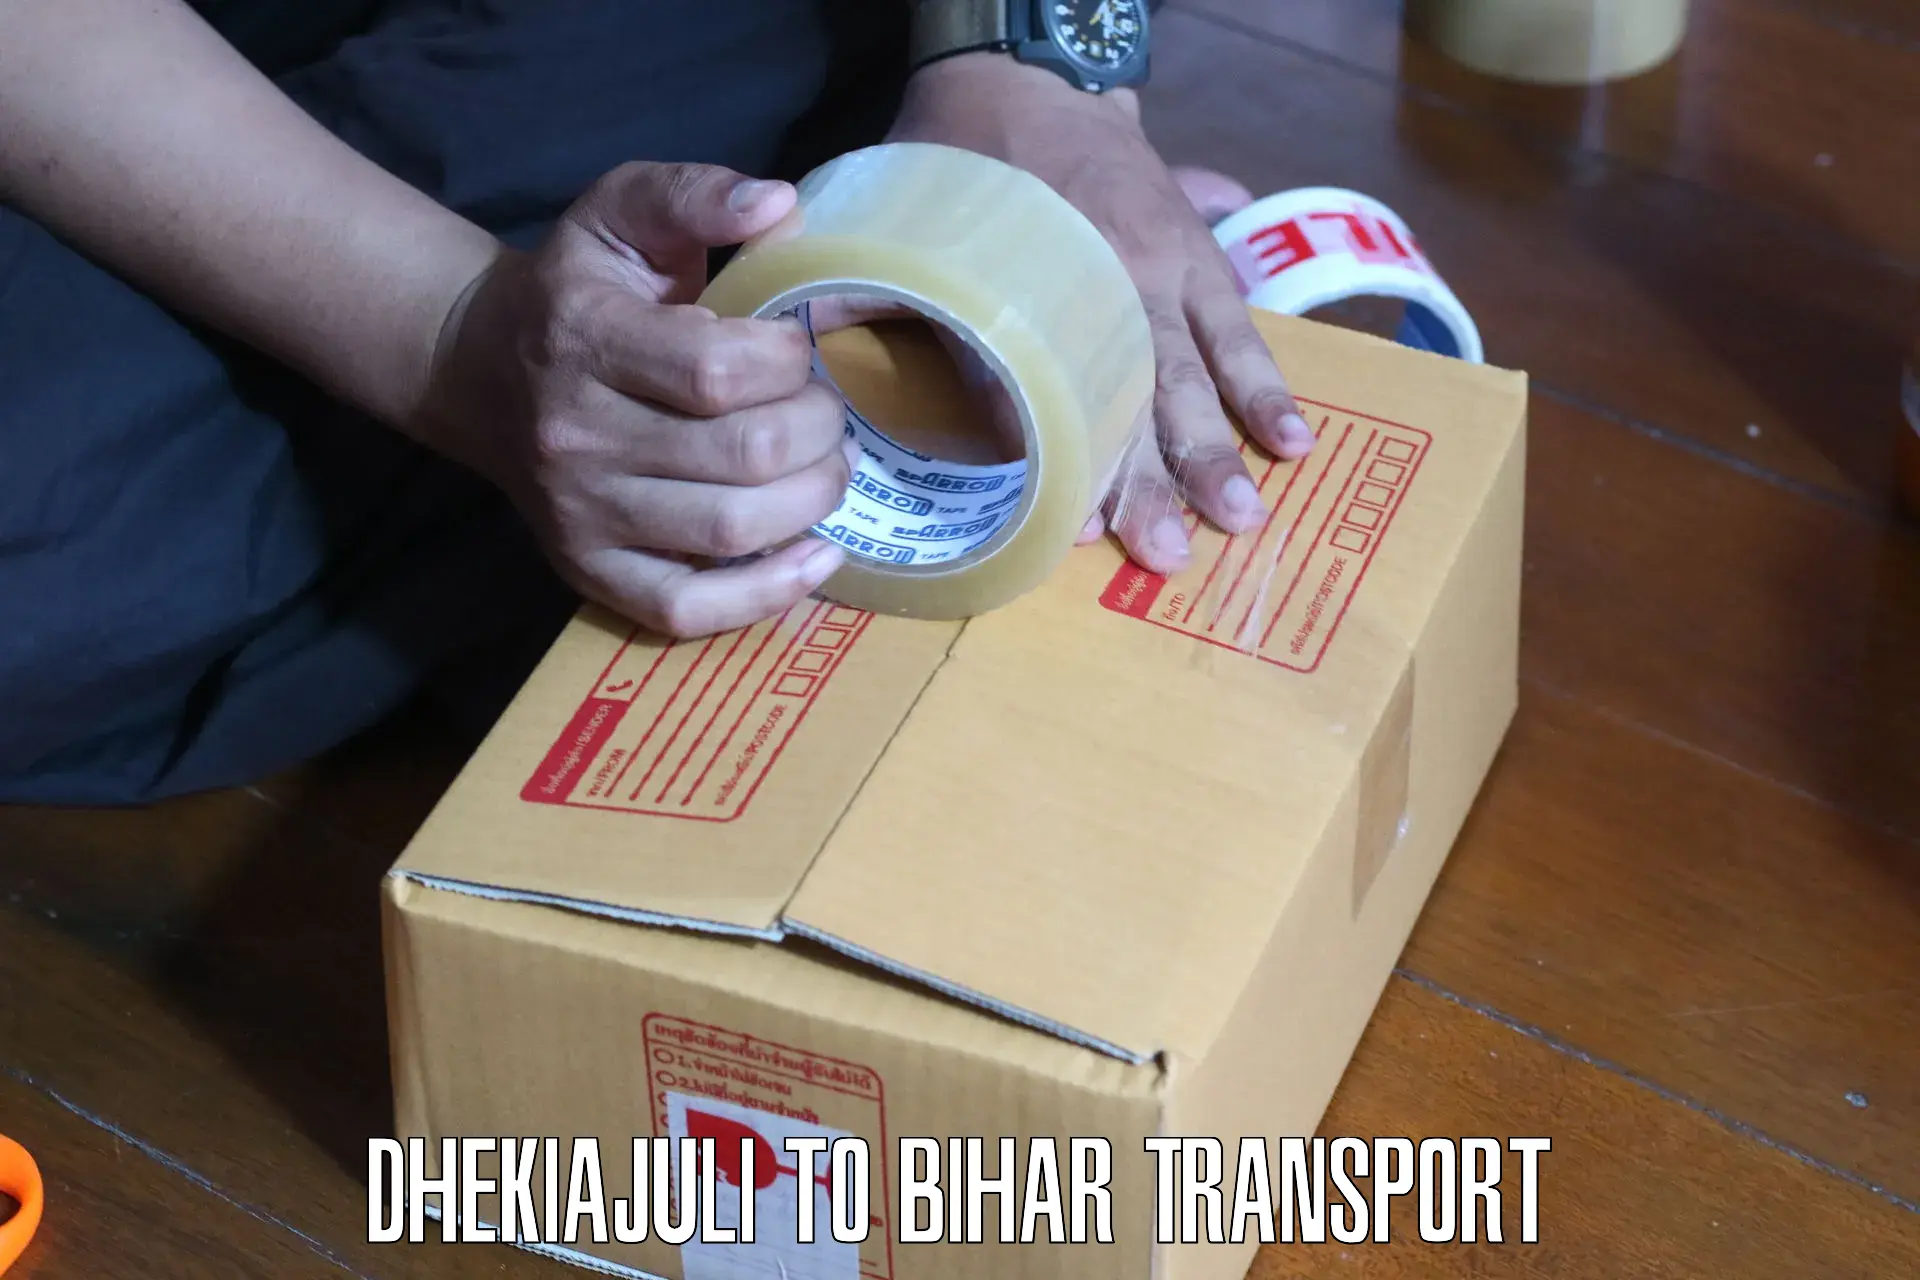 Delivery service Dhekiajuli to Thakurganj